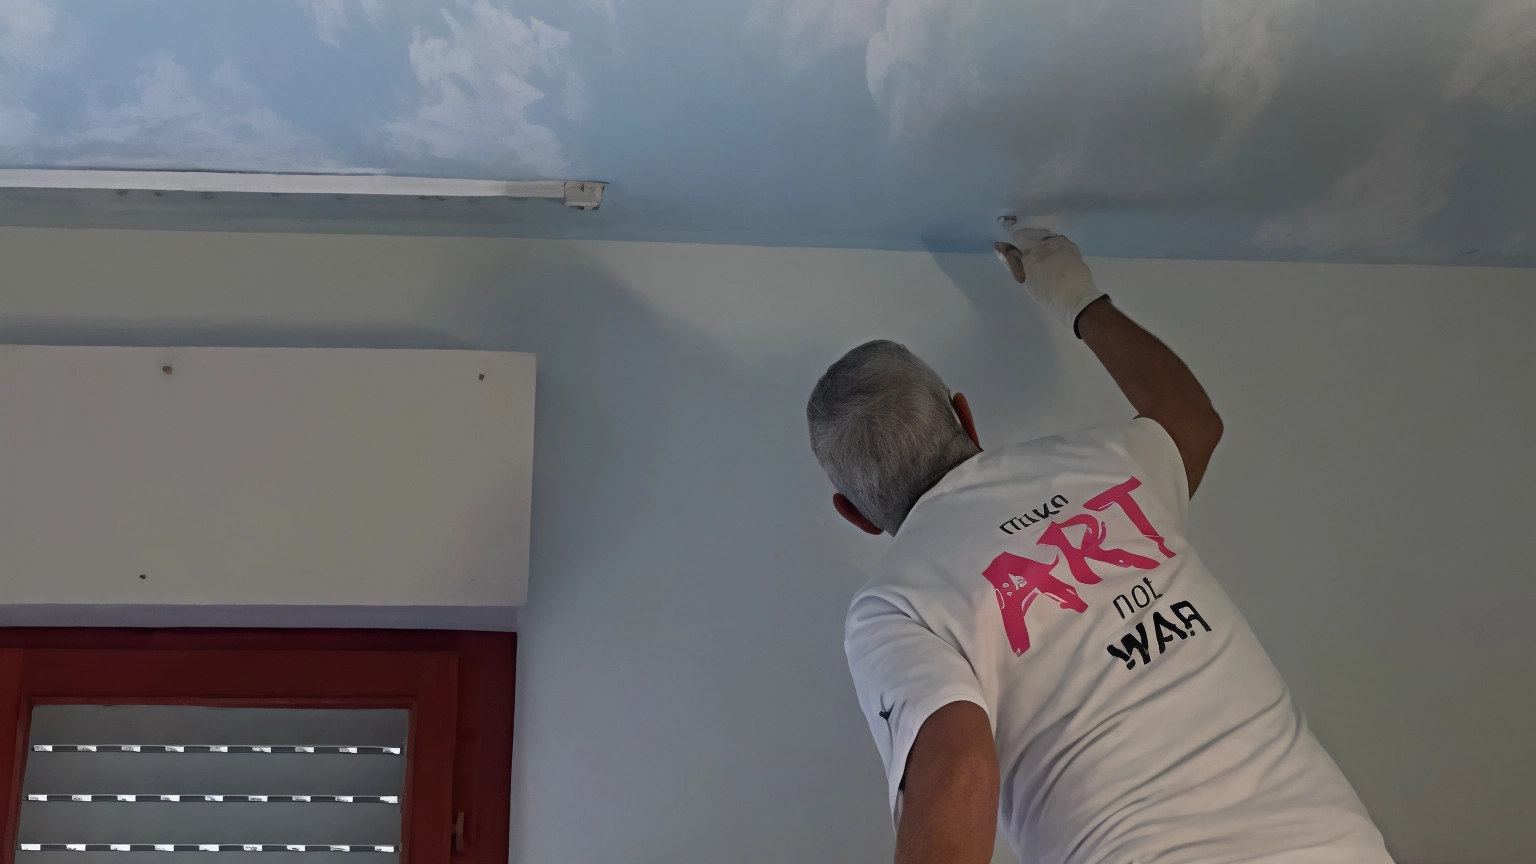 Al via la collaborazione con giovani artisti per decorare i soffitti delle camere partendo dai disegni degli ospiti